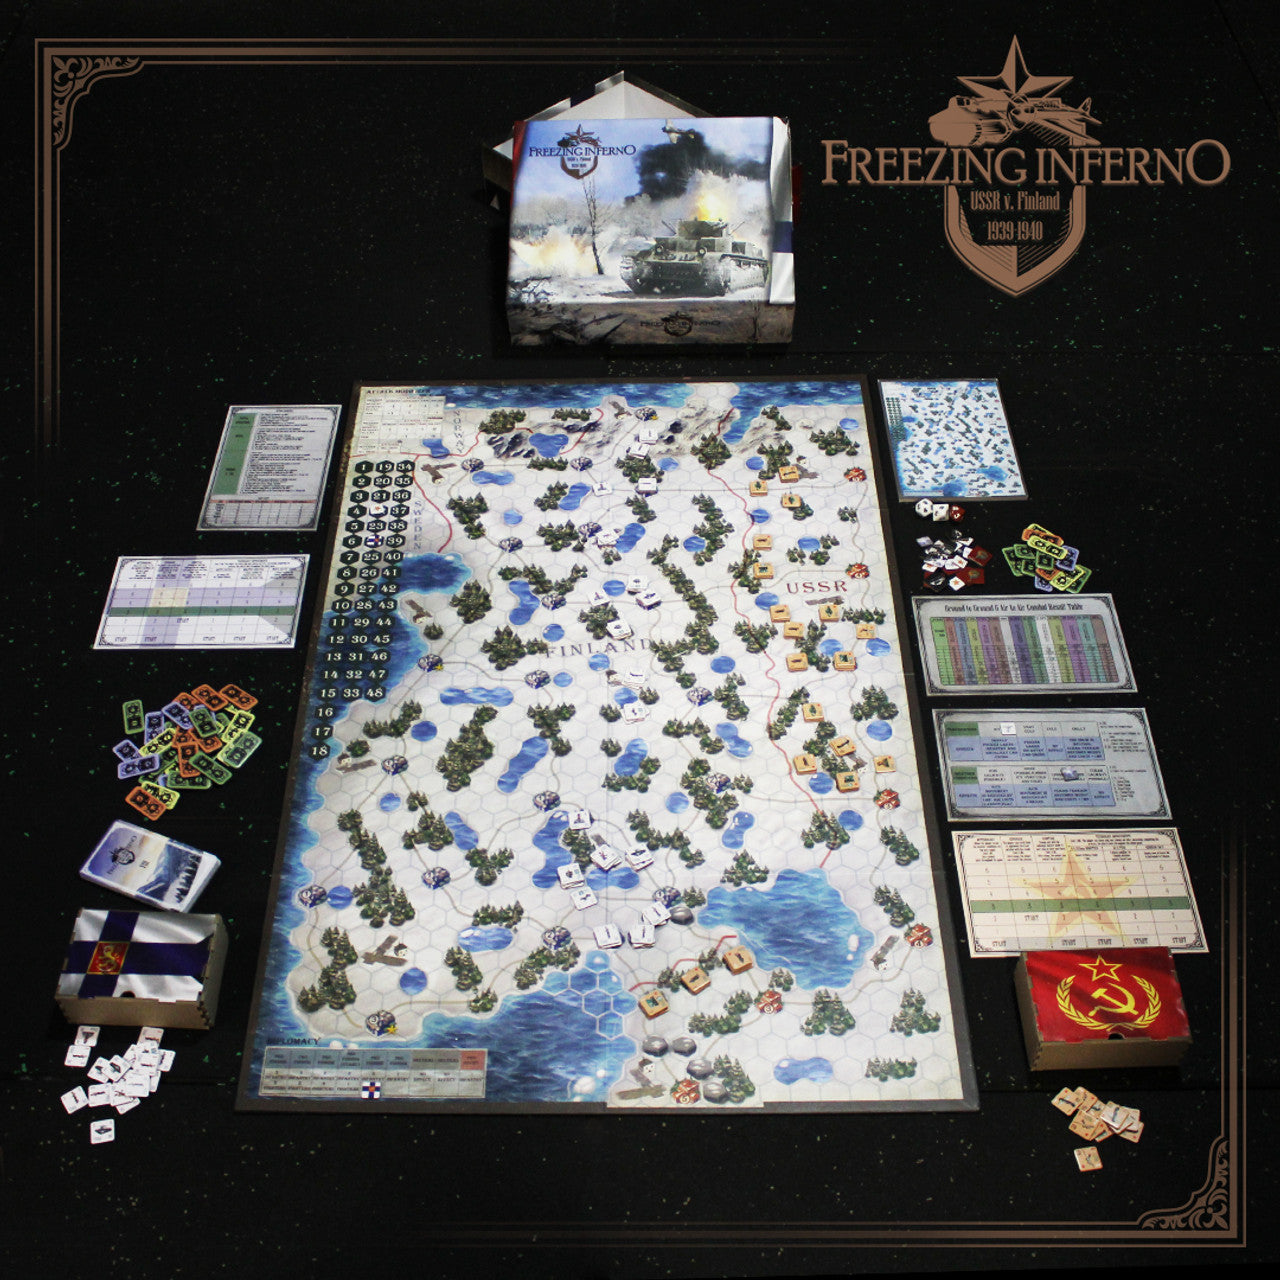 Freezing Inferno War Board Game play full setup